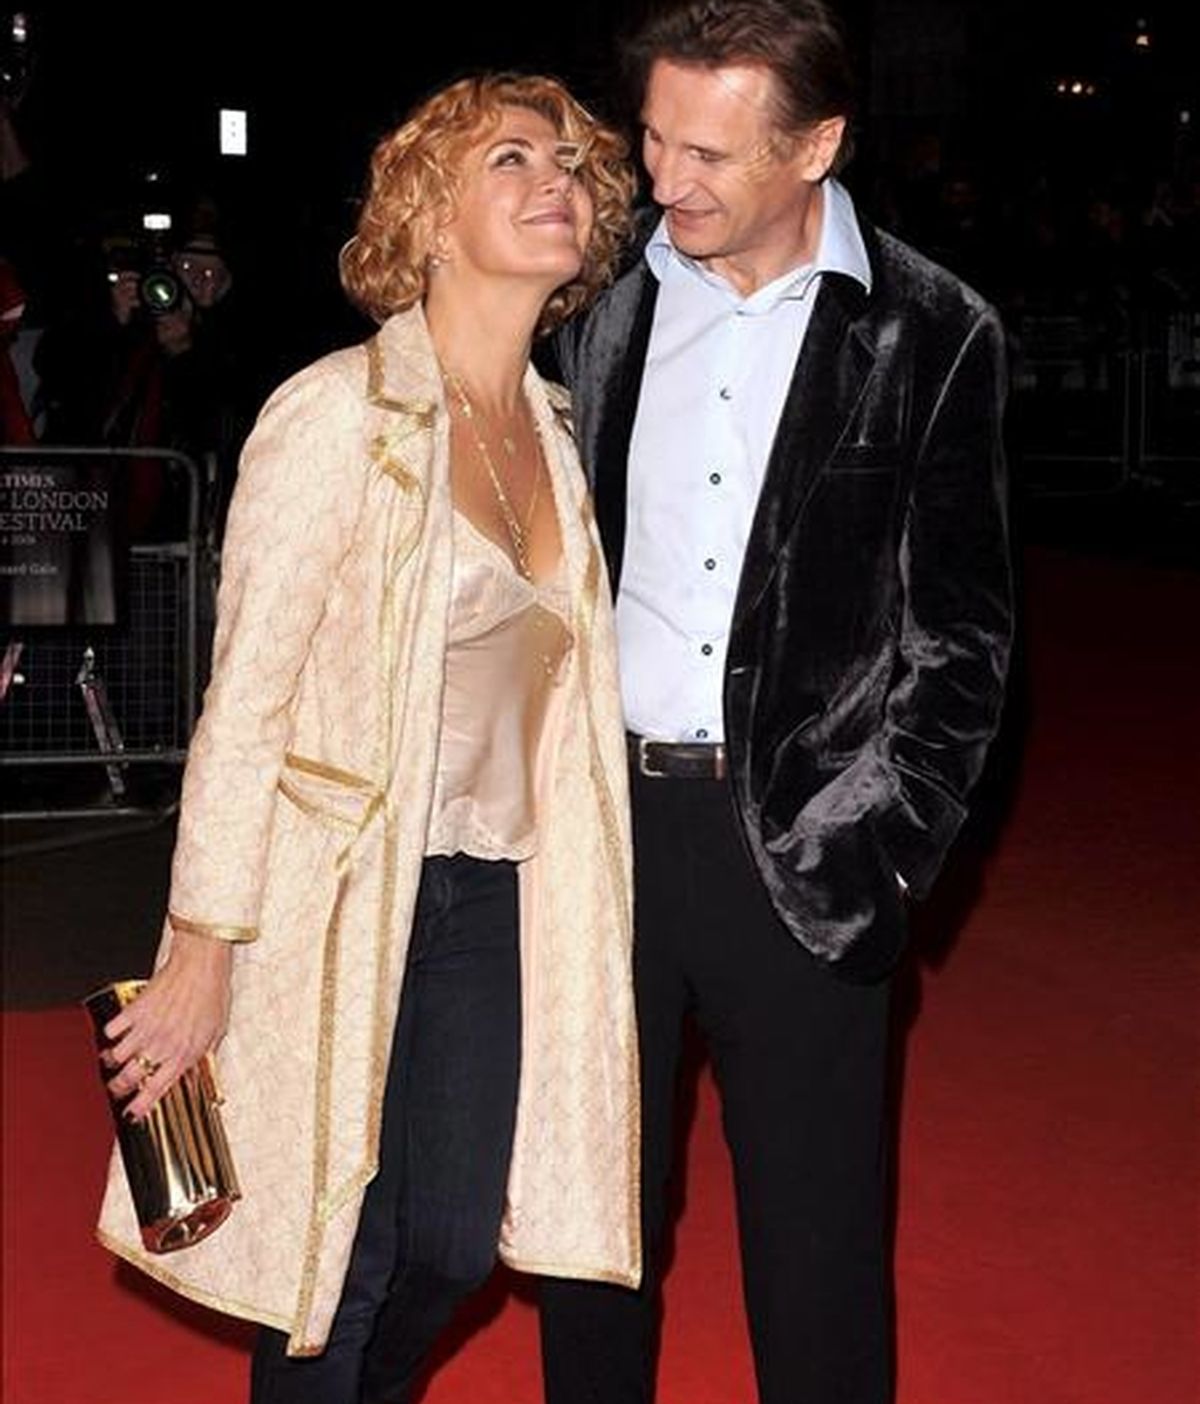 El actor irlandés Liam Neeson (d) y su esposa, la actriz británica Natasha Richardson (i), en el estreno de la película del director británico Richard Eyre, "The Other Man", en octubre de 2008 en Londres. EFE